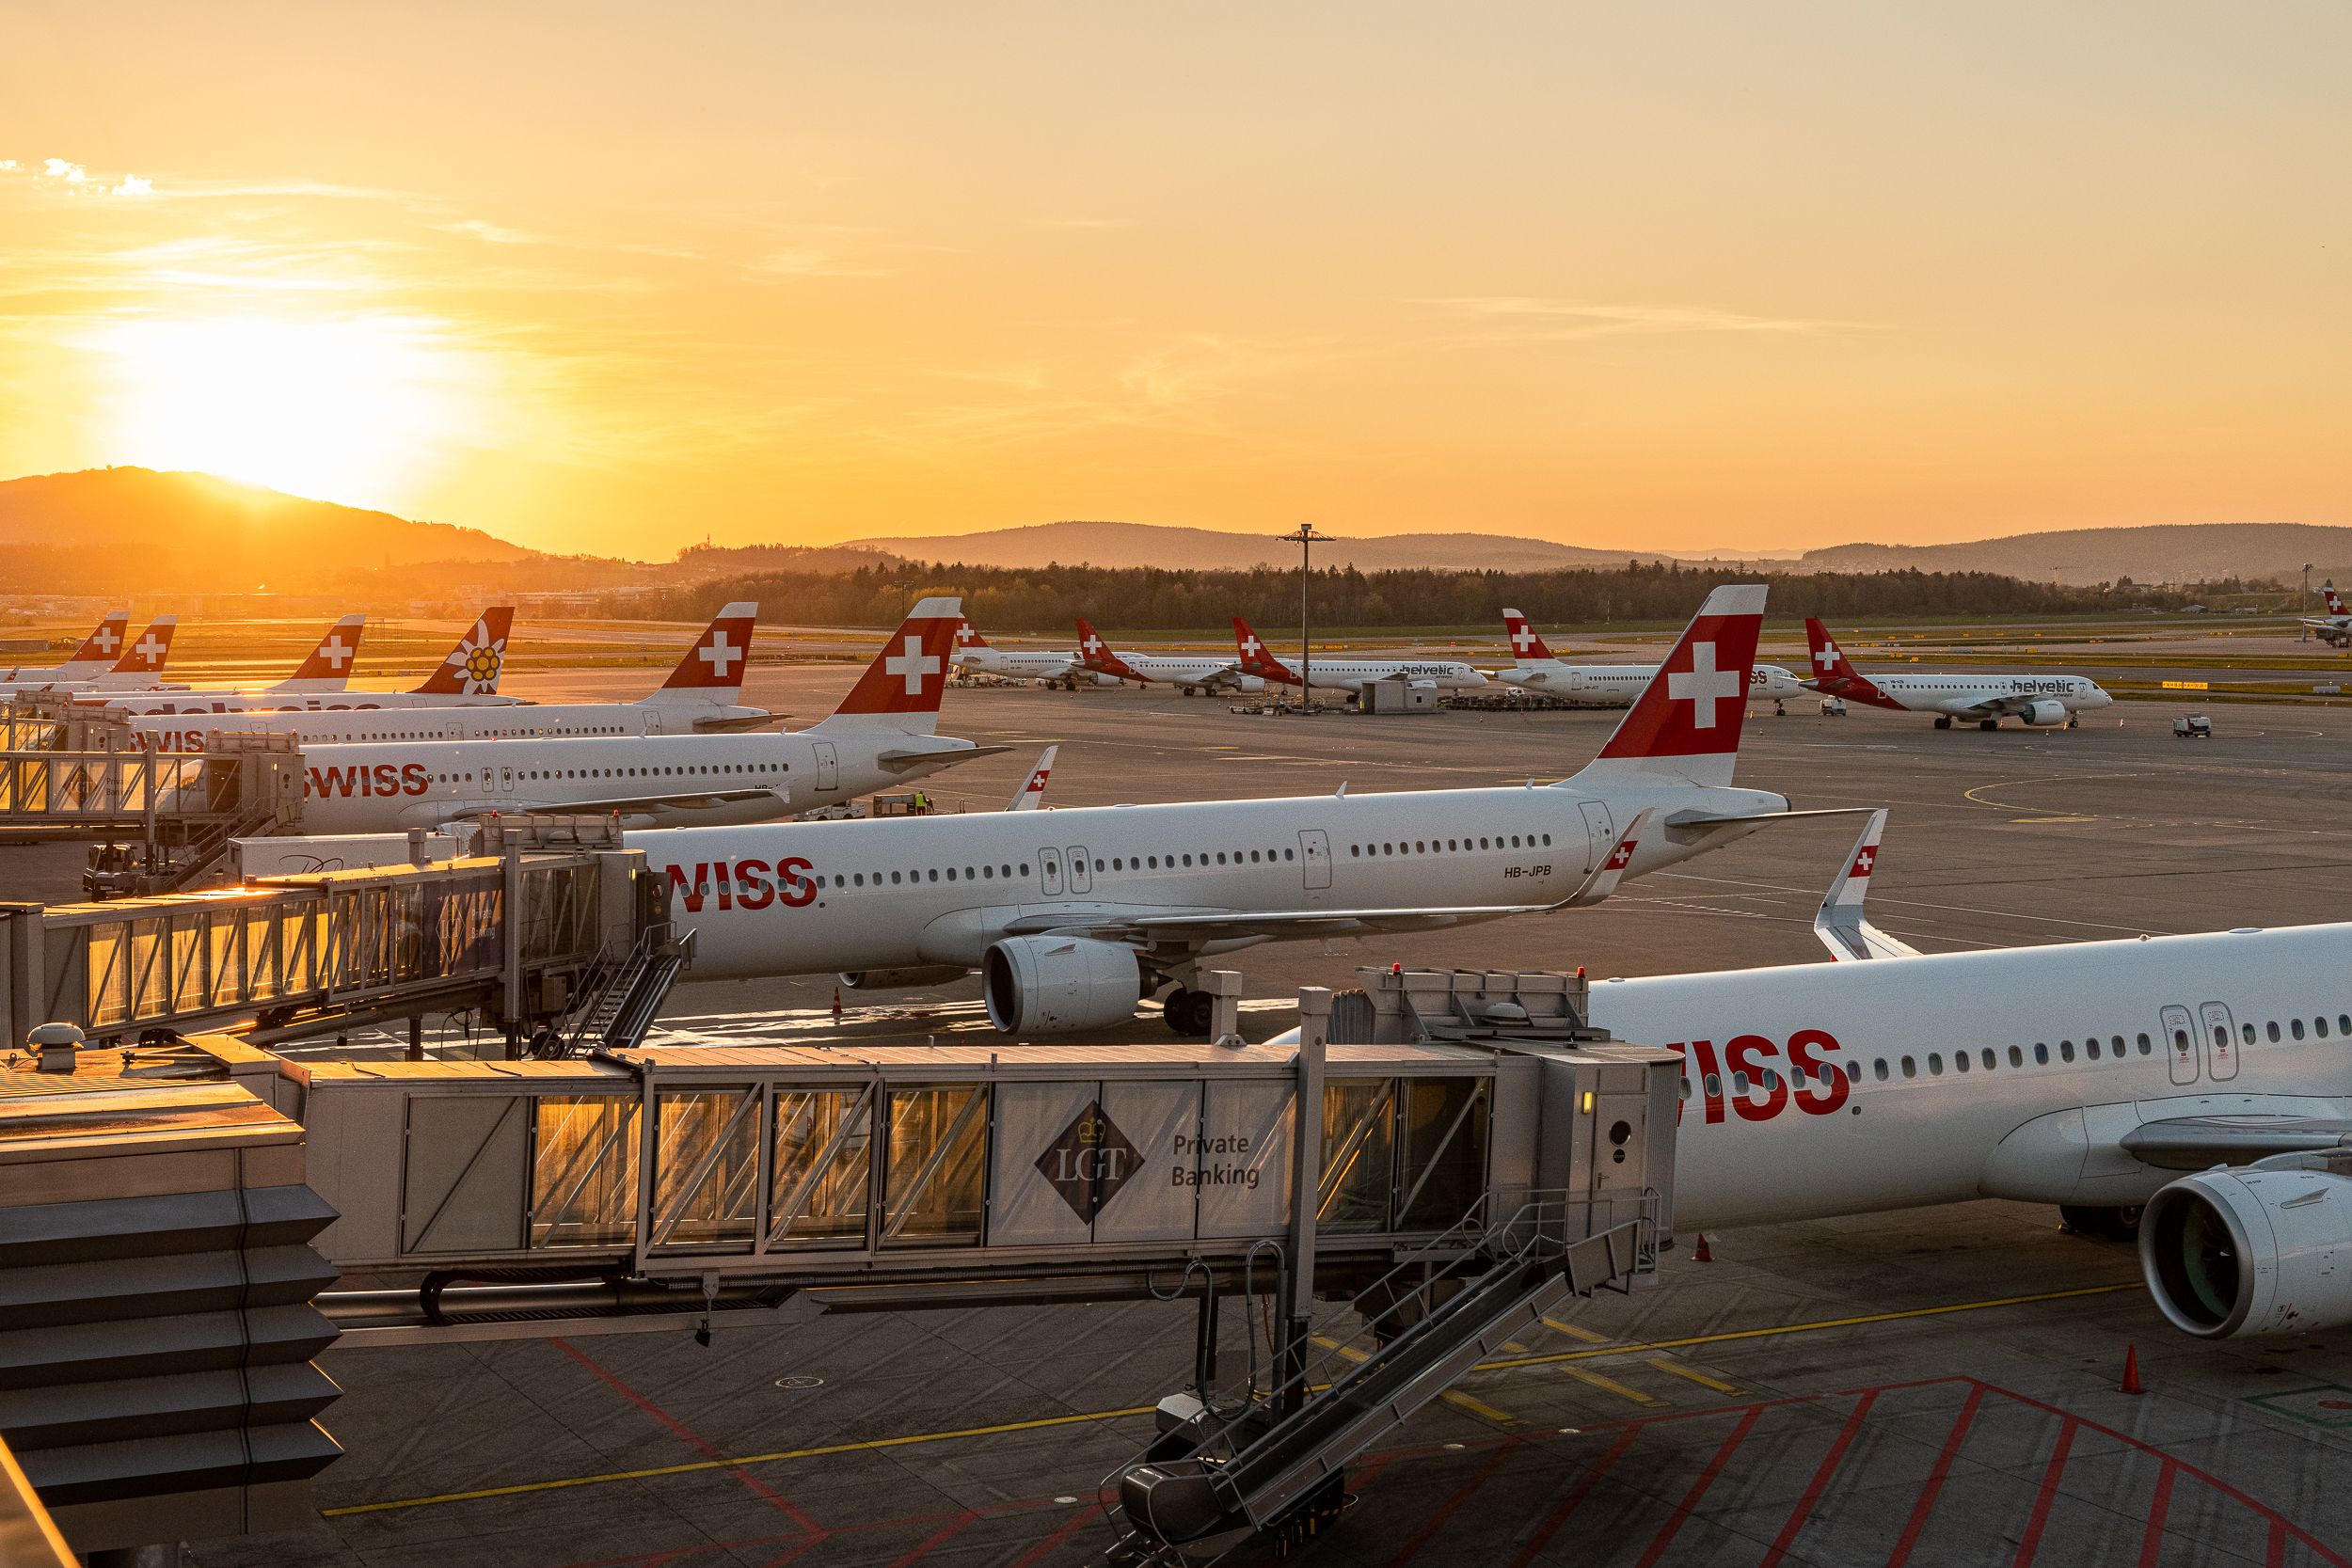 SWISS Planes at sunset in Zurich